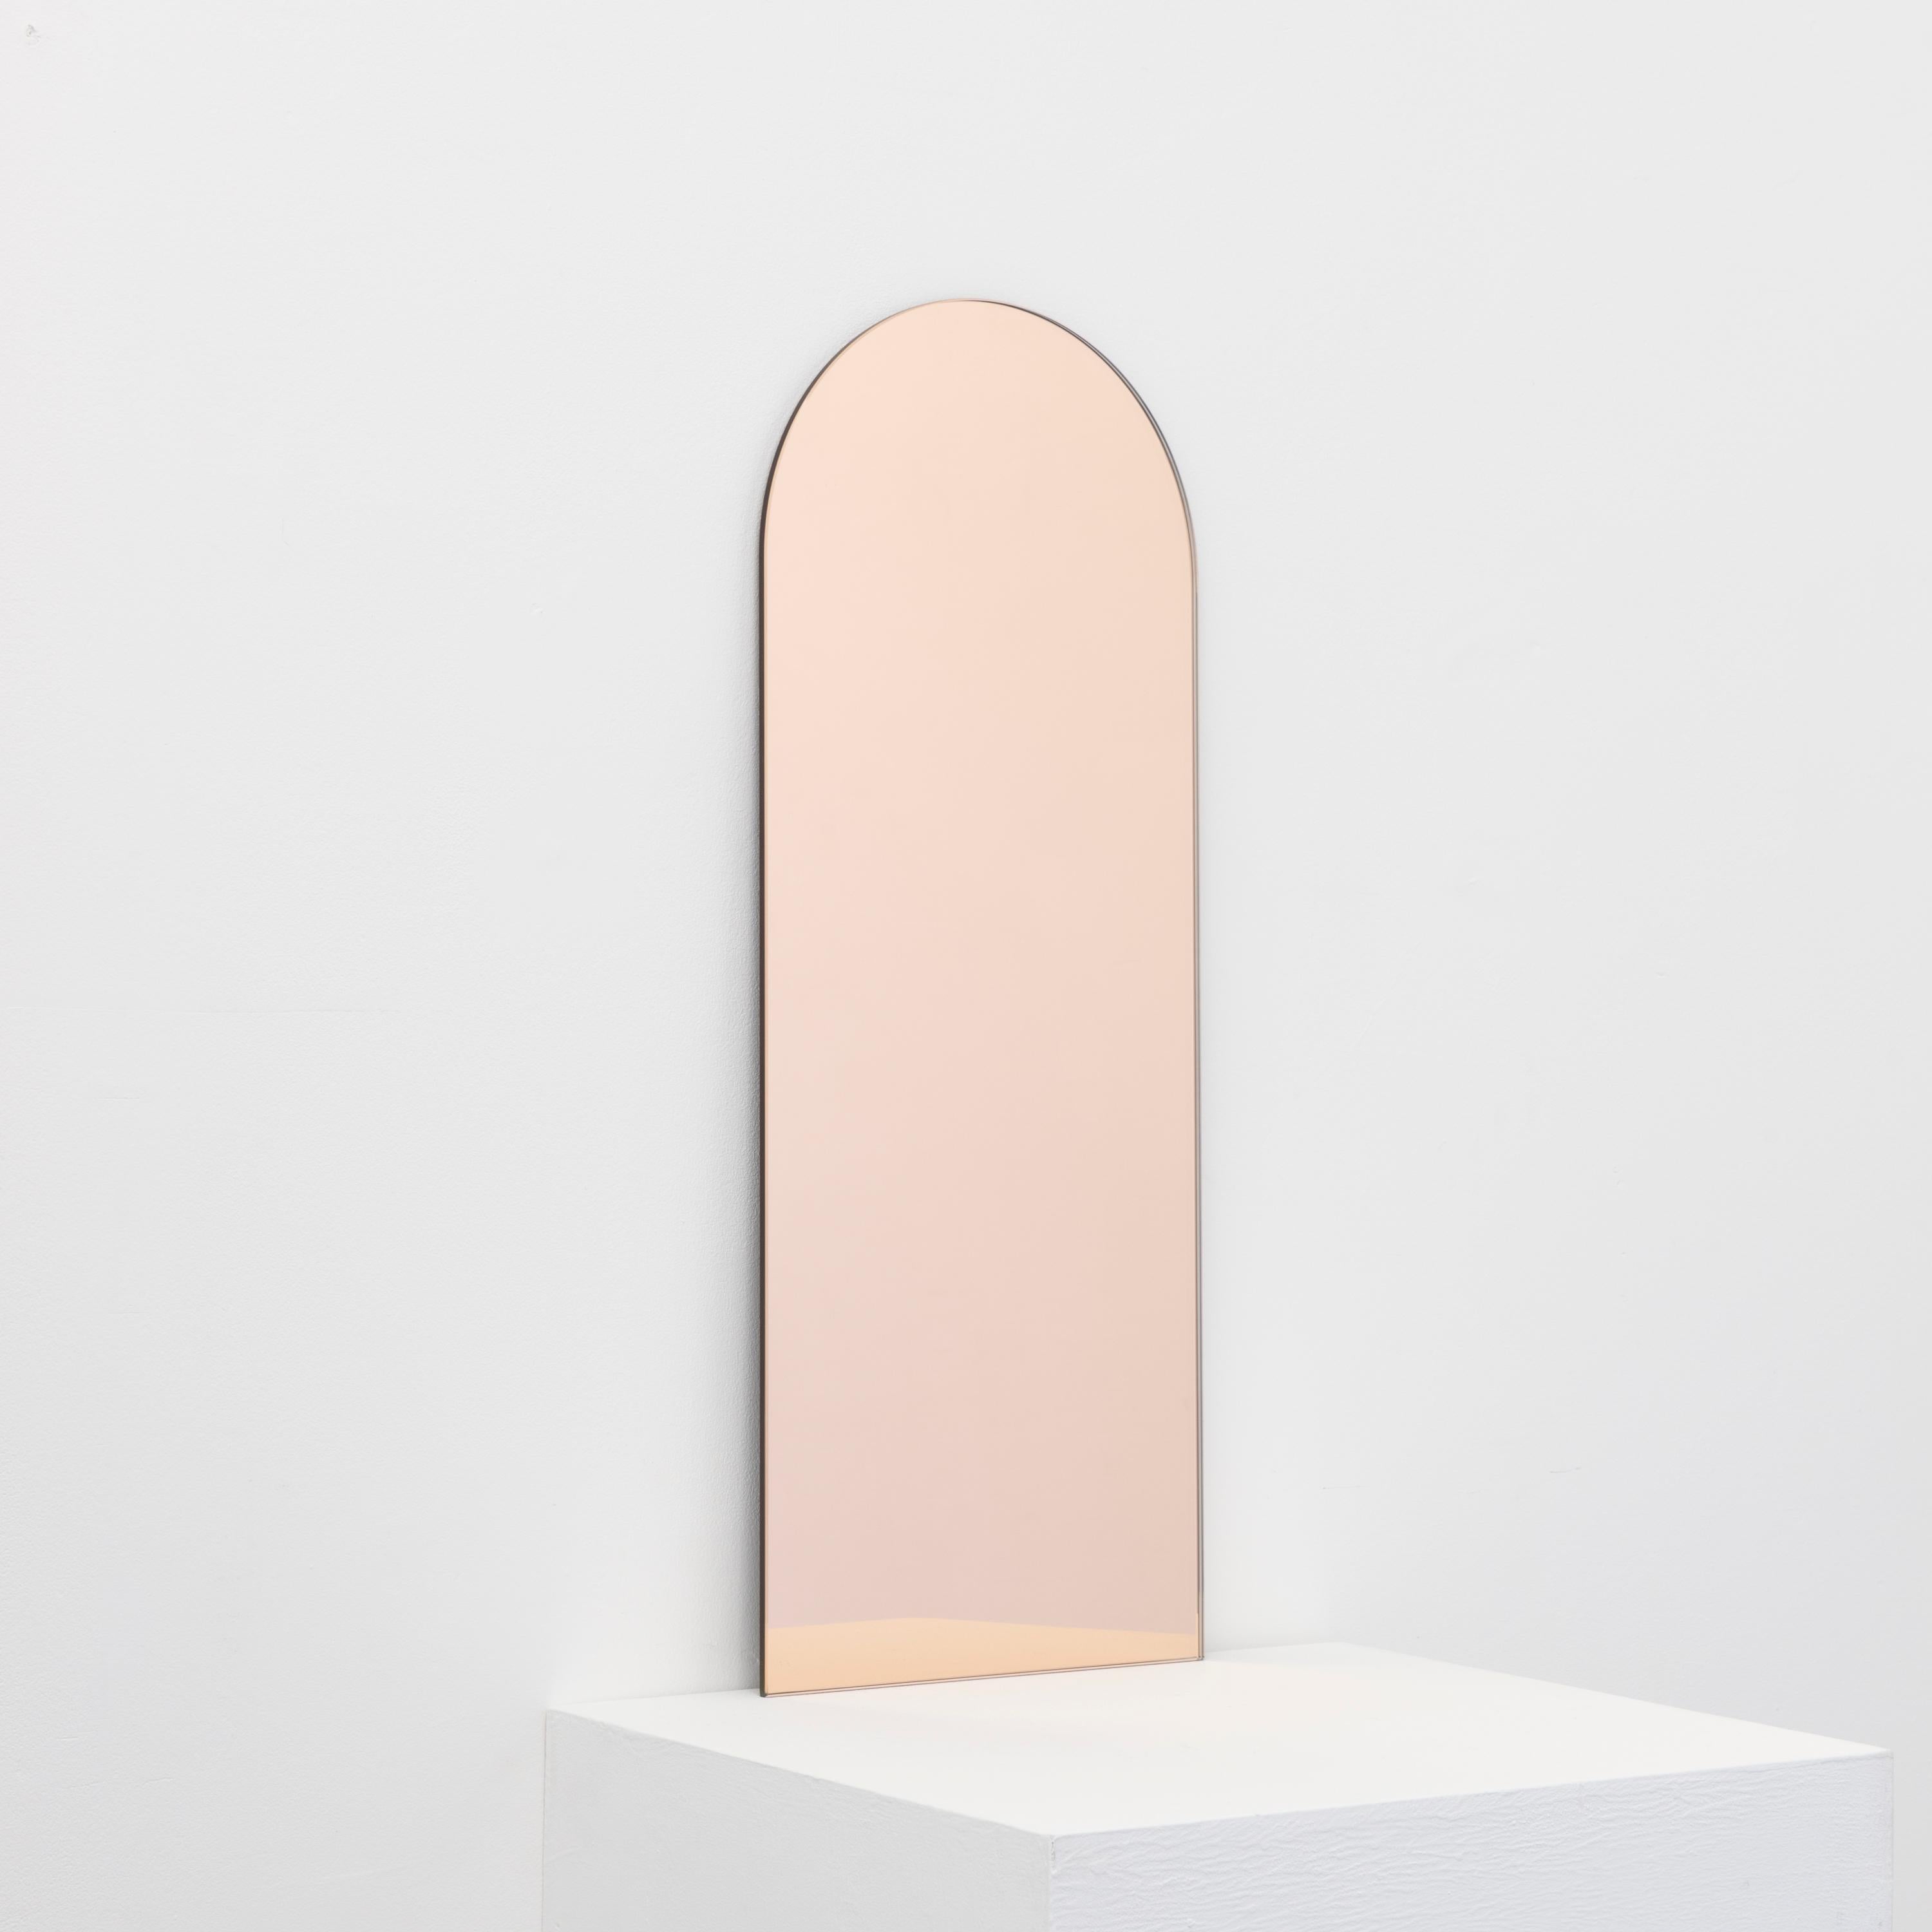 Miroir rectangulaire minimaliste sans cadre en or rose avec un effet flottant. Un design de qualité qui garantit que le miroir est parfaitement parallèle au mur. Conçu et fabriqué à Londres, au Royaume-Uni.

Equipé de plaques professionnelles non